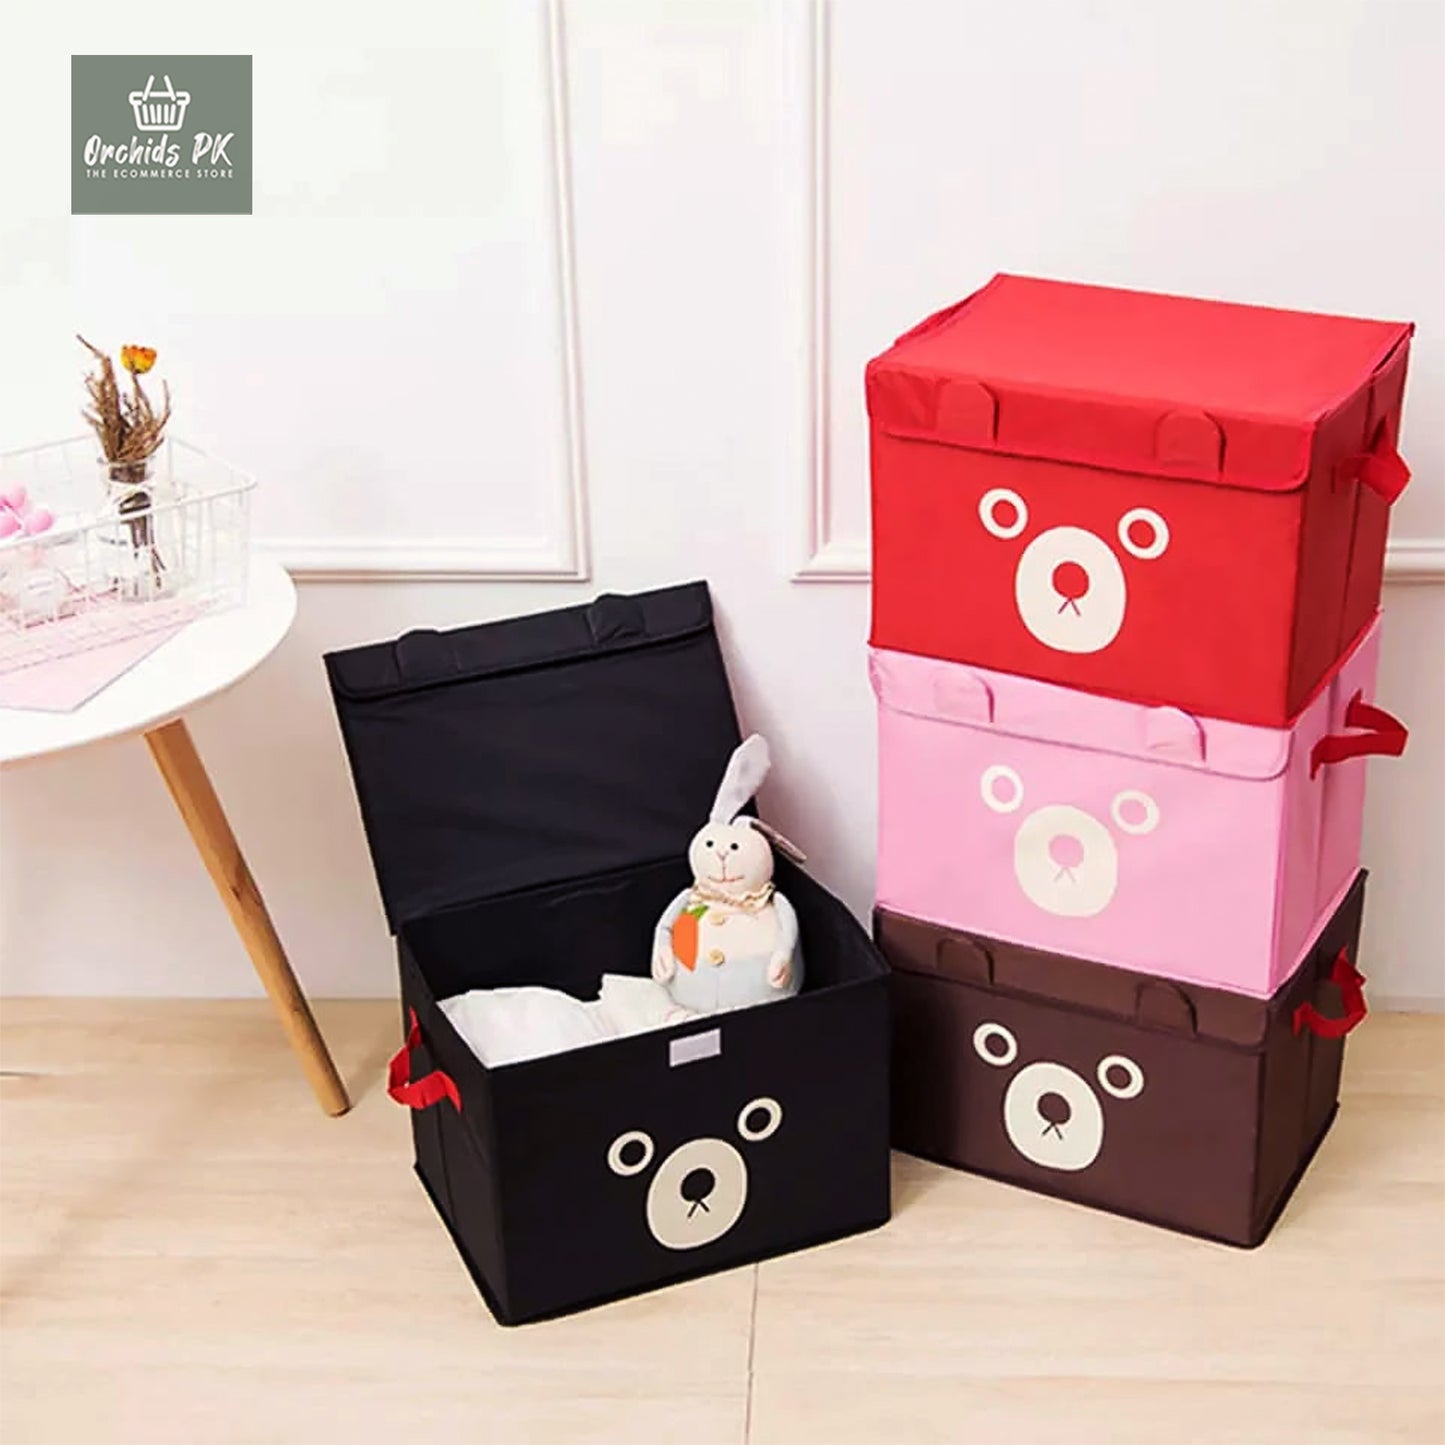 Panda Storage bag for kids